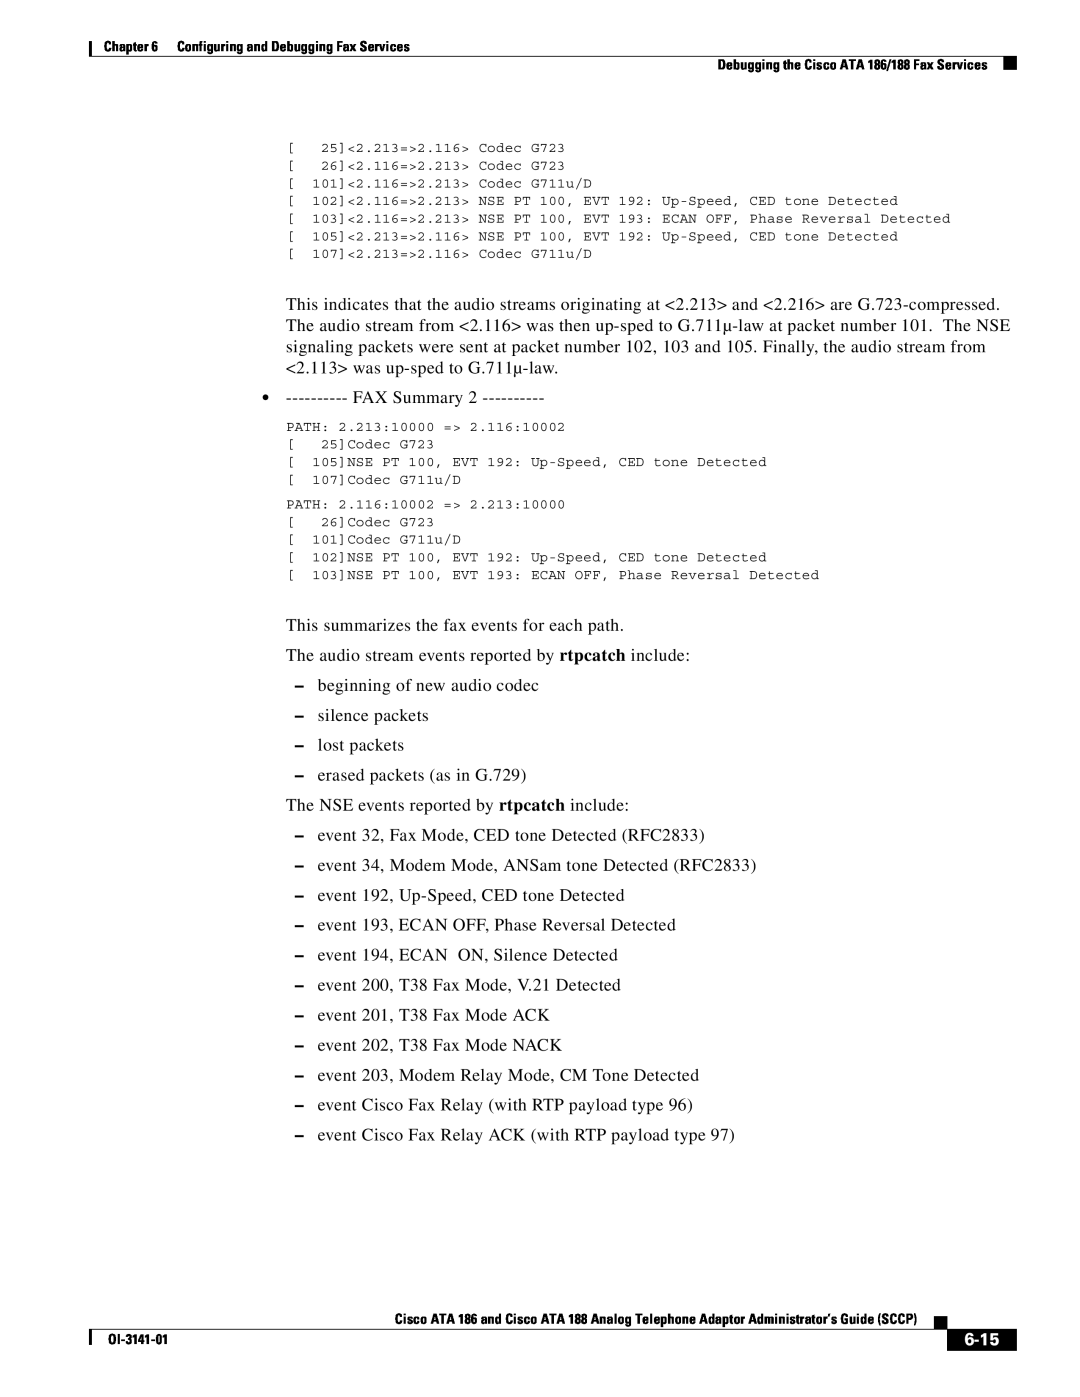 Cisco Systems ATA 188, ATA 186 manual FAX Summary, 6-15 